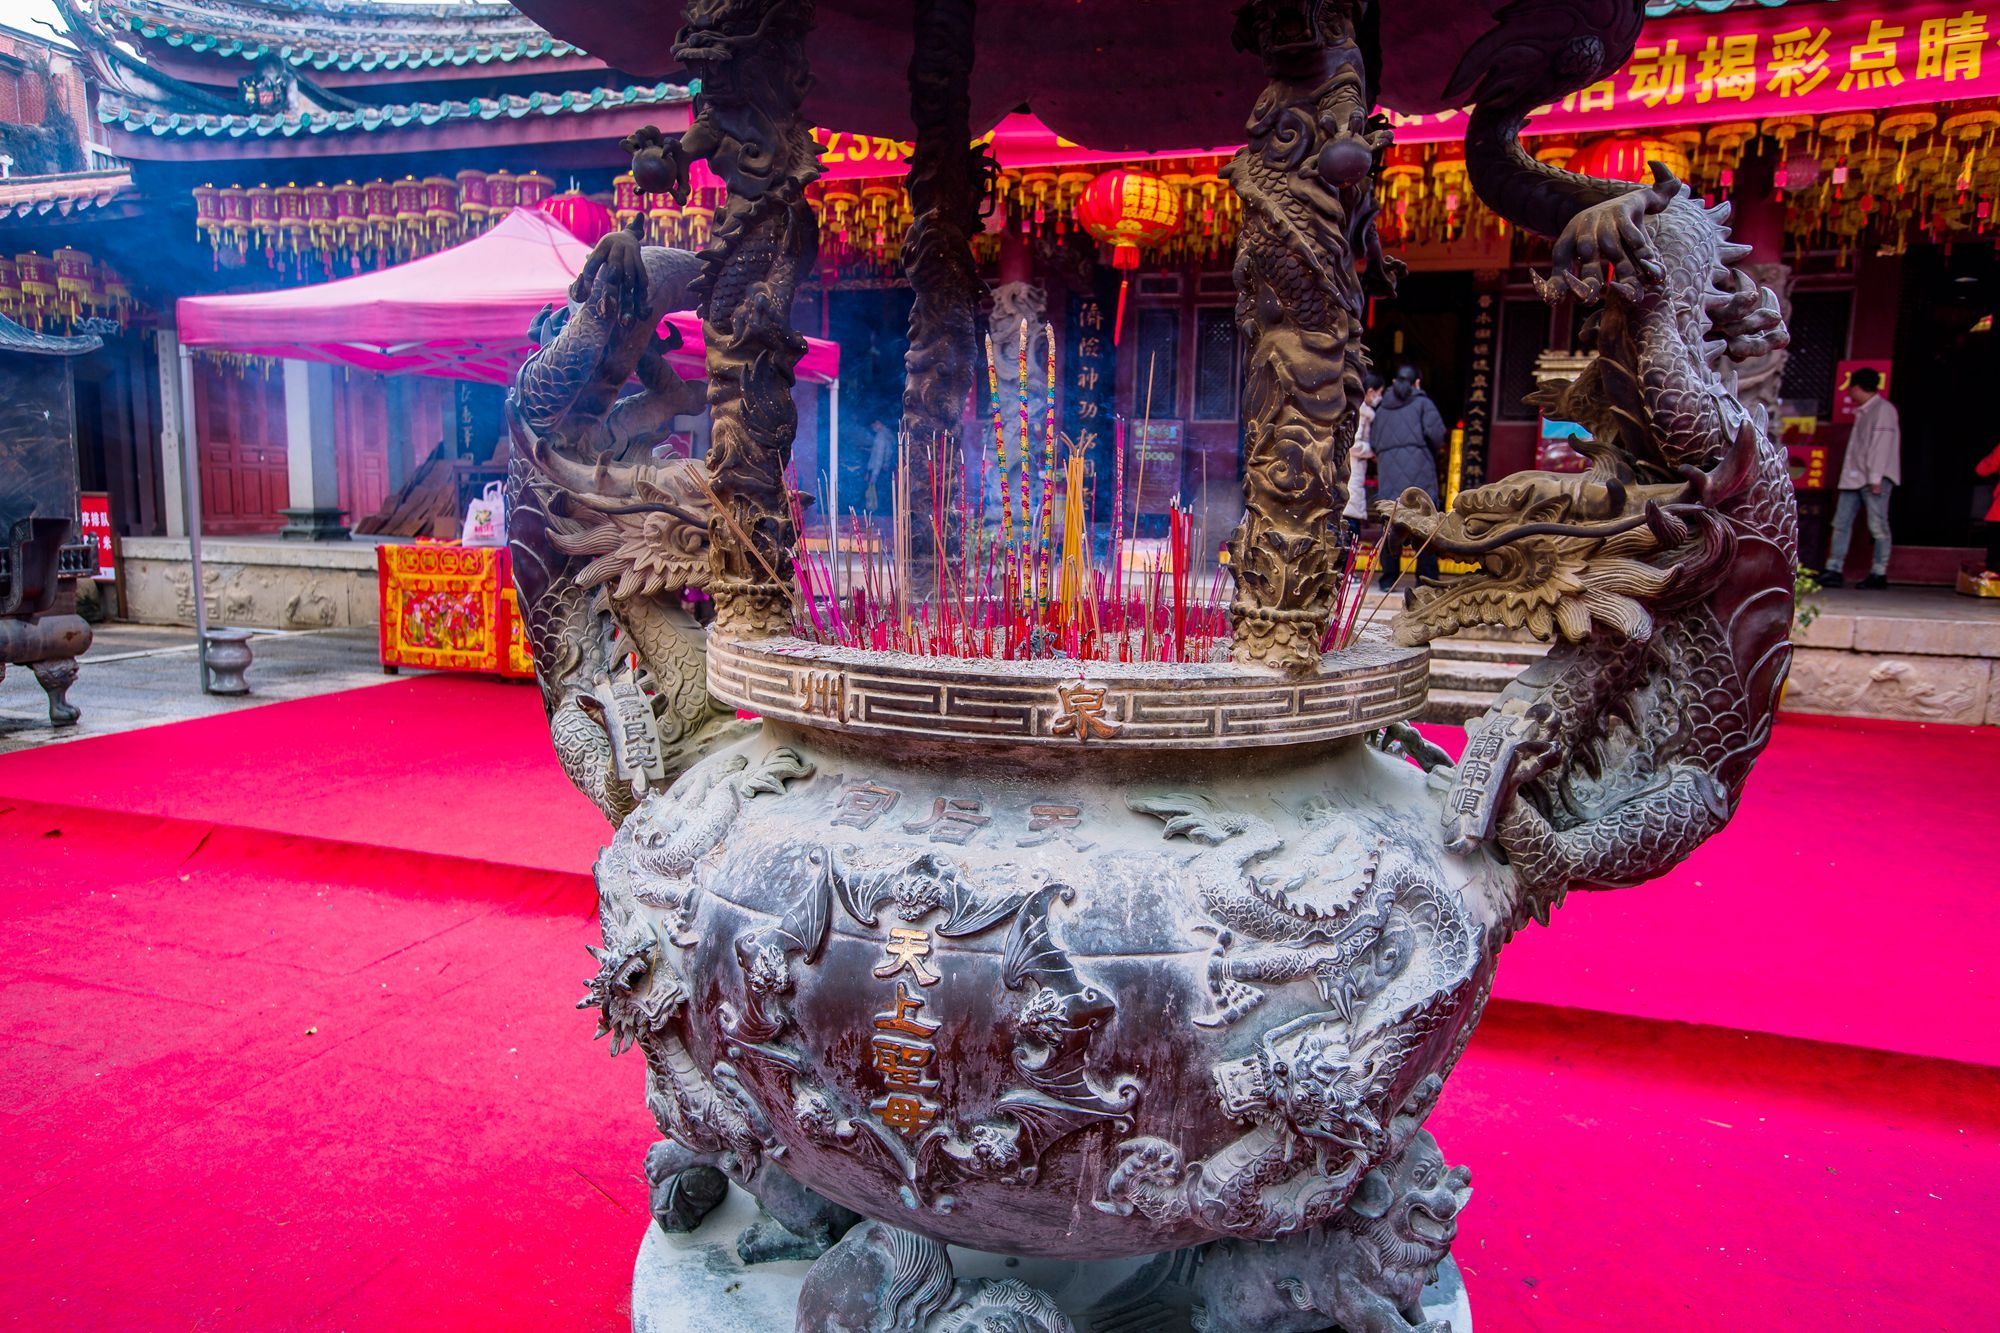 泉州天后宫,我国现存最大的妈祖庙,是海上丝绸之路的重要史迹